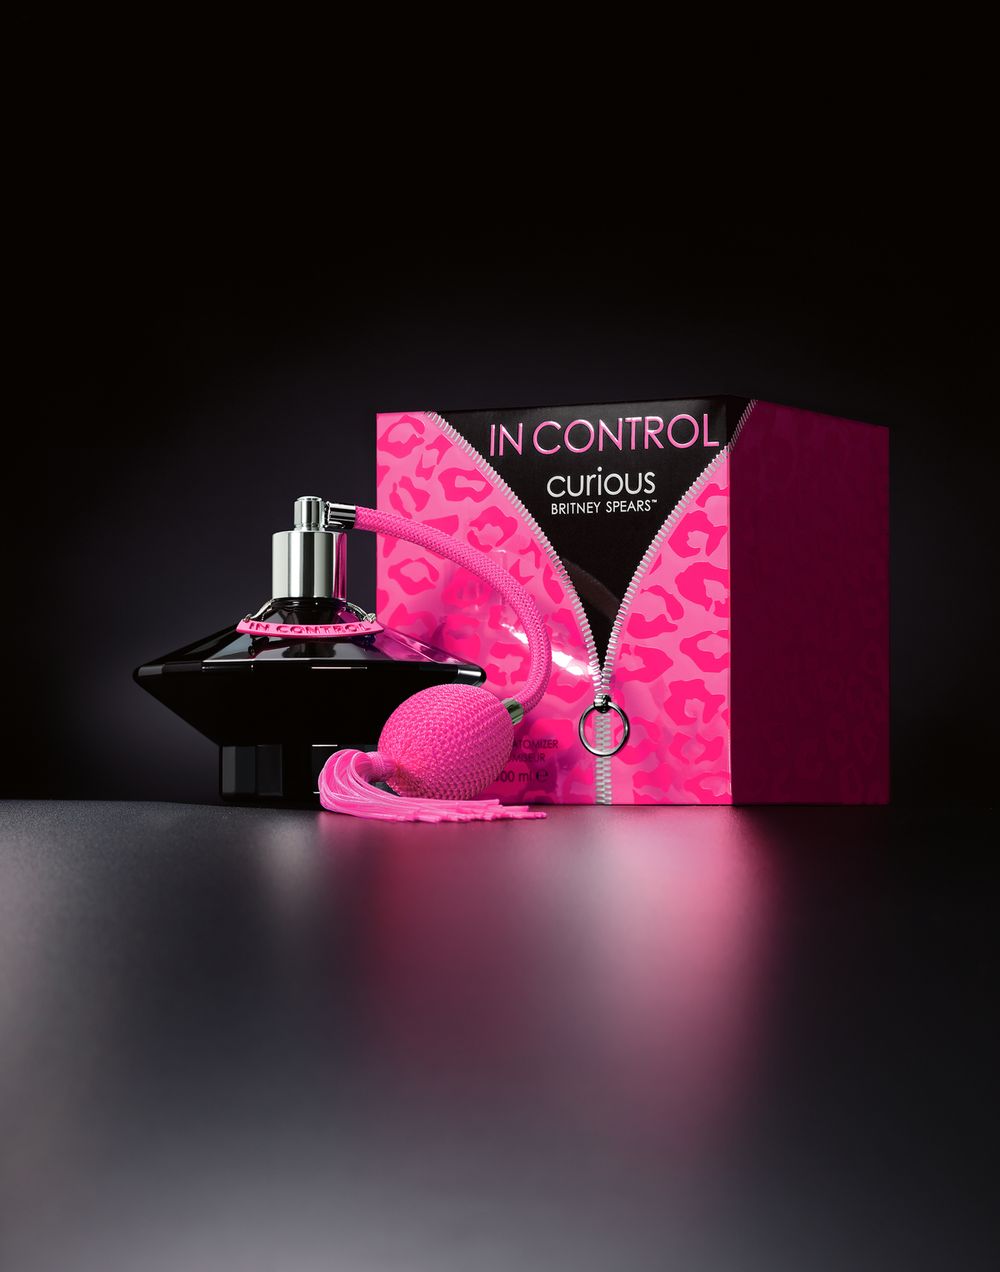 In Control Curious Britney Spears parfum - een geur voor dames 2006